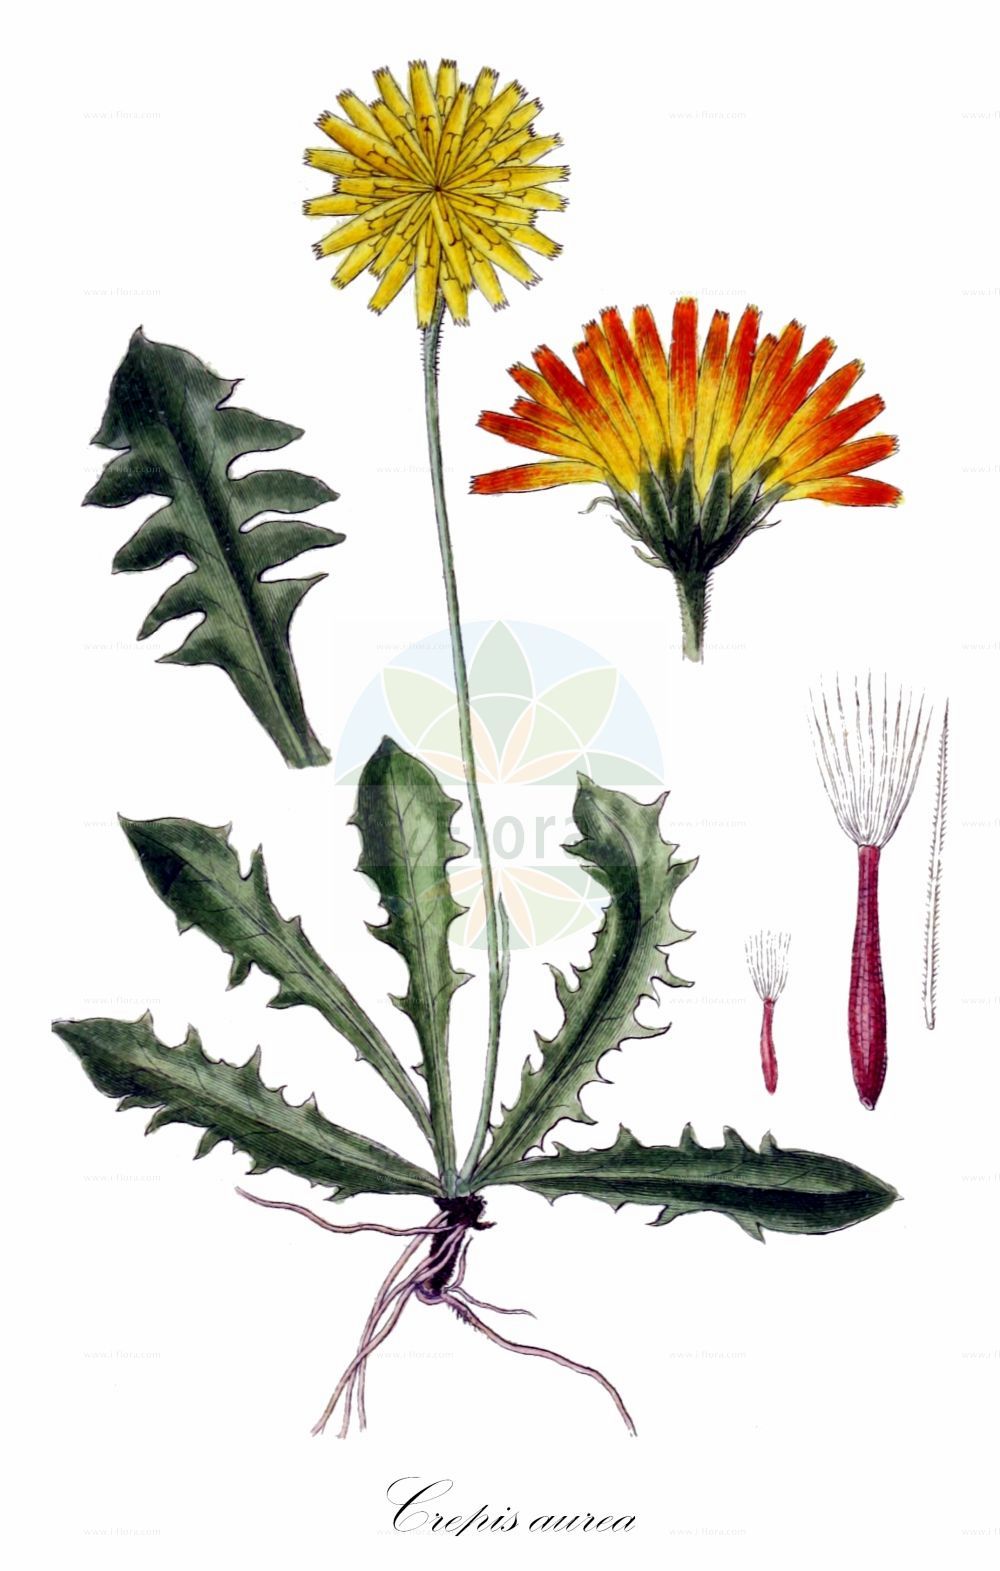 Historische Abbildung von Crepis aurea (Gold-Pippau - Golden Hawk's-beard). Das Bild zeigt Blatt, Bluete, Frucht und Same. ---- Historical Drawing of Crepis aurea (Gold-Pippau - Golden Hawk's-beard). The image is showing leaf, flower, fruit and seed.(Crepis aurea,Gold-Pippau,Golden Hawk's-beard,Crepis aurea,Crepis kitaibelii,Leontodon aureus,Gold-Pippau,Golden Hawk's-beard,Crepis,Pippau,Hawk's-beard,Asteraceae,Korbblütengewächse,Daisy family,Blatt,Bluete,Frucht,Same,leaf,flower,fruit,seed,Sturm (1796f))